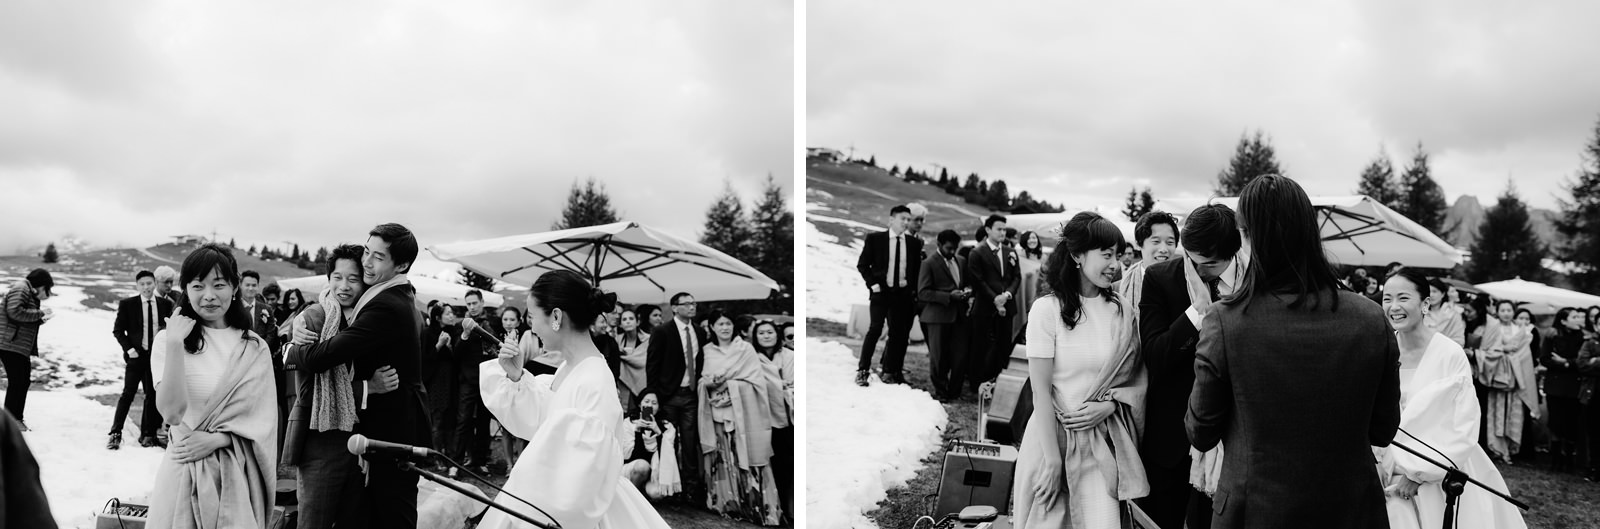 Mountain Wedding Reception